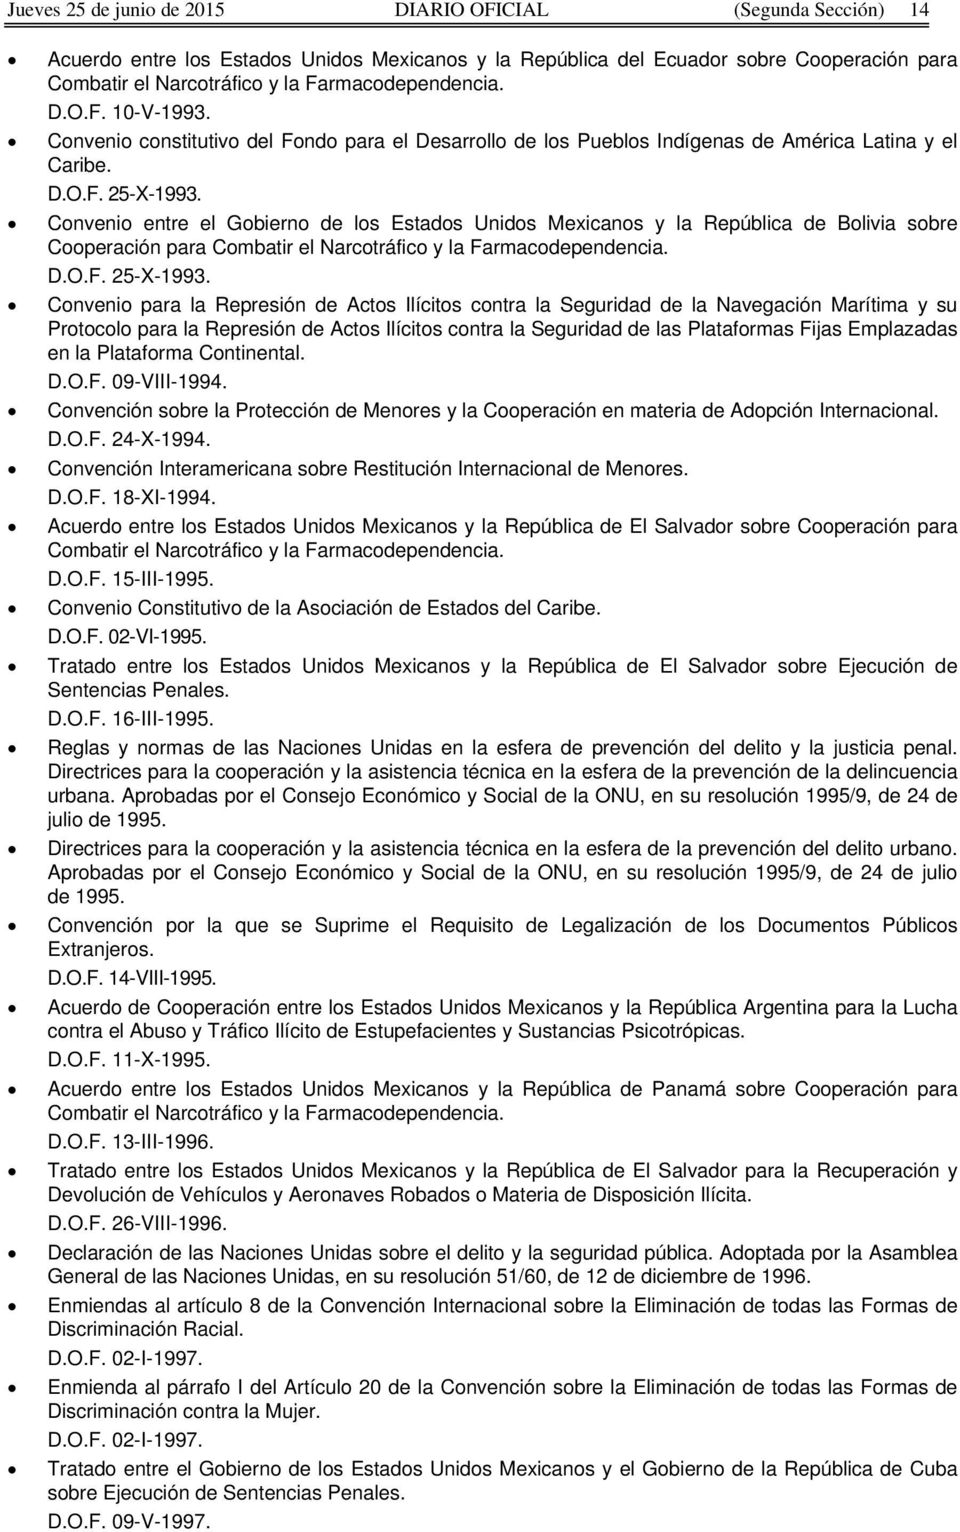 Convenio entre el Gobierno de los Estados Unidos Mexicanos y la República de Bolivia sobre Cooperación para Combatir el Narcotráfico y la Farmacodependencia. D.O.F. 25-X-1993.